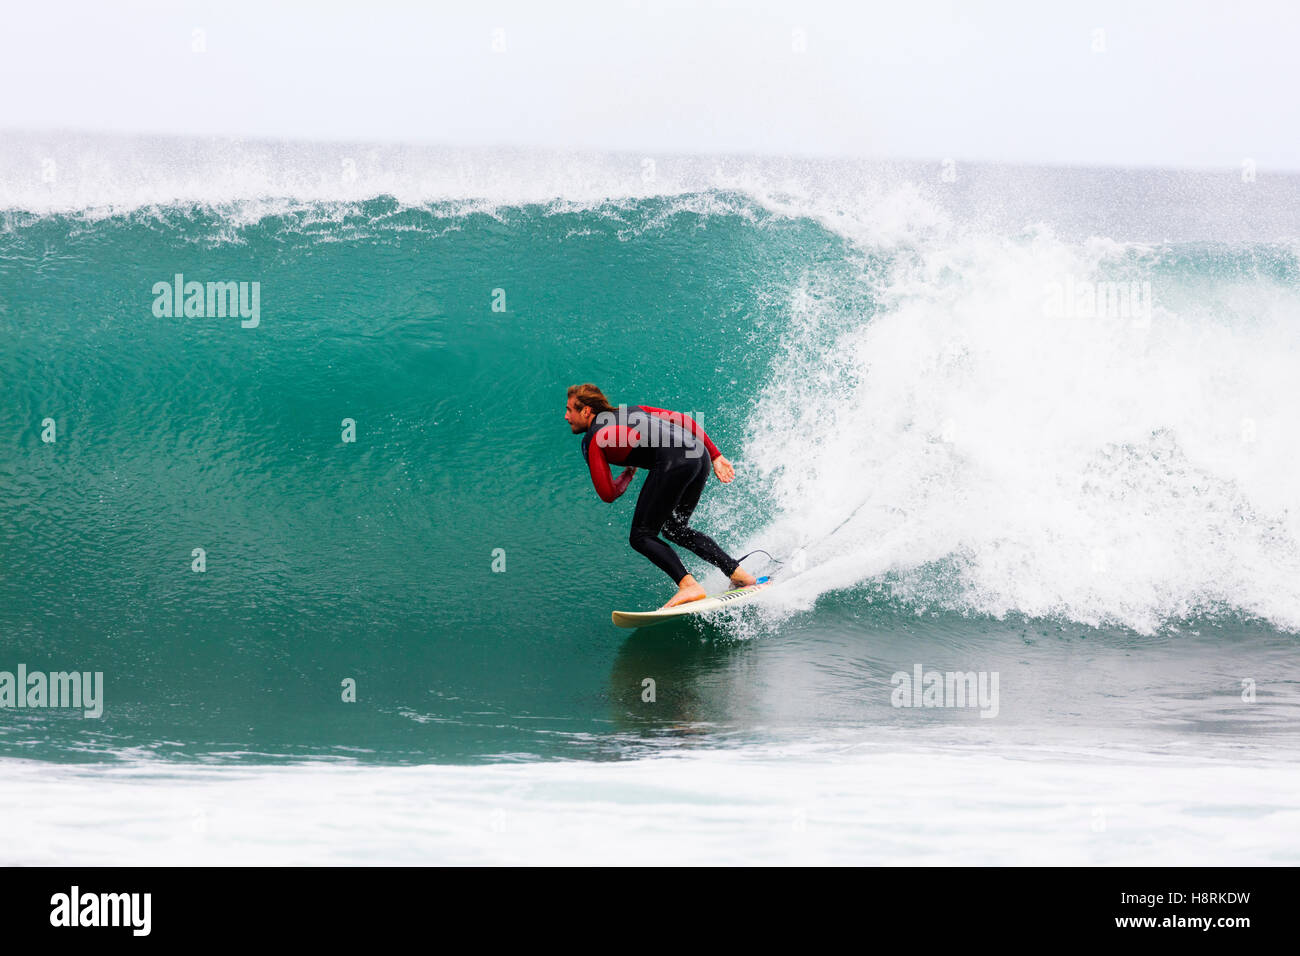 Sudáfrica, Eastern Cape, Jeffery's Bay, surfer en ola Supertubes Foto de stock